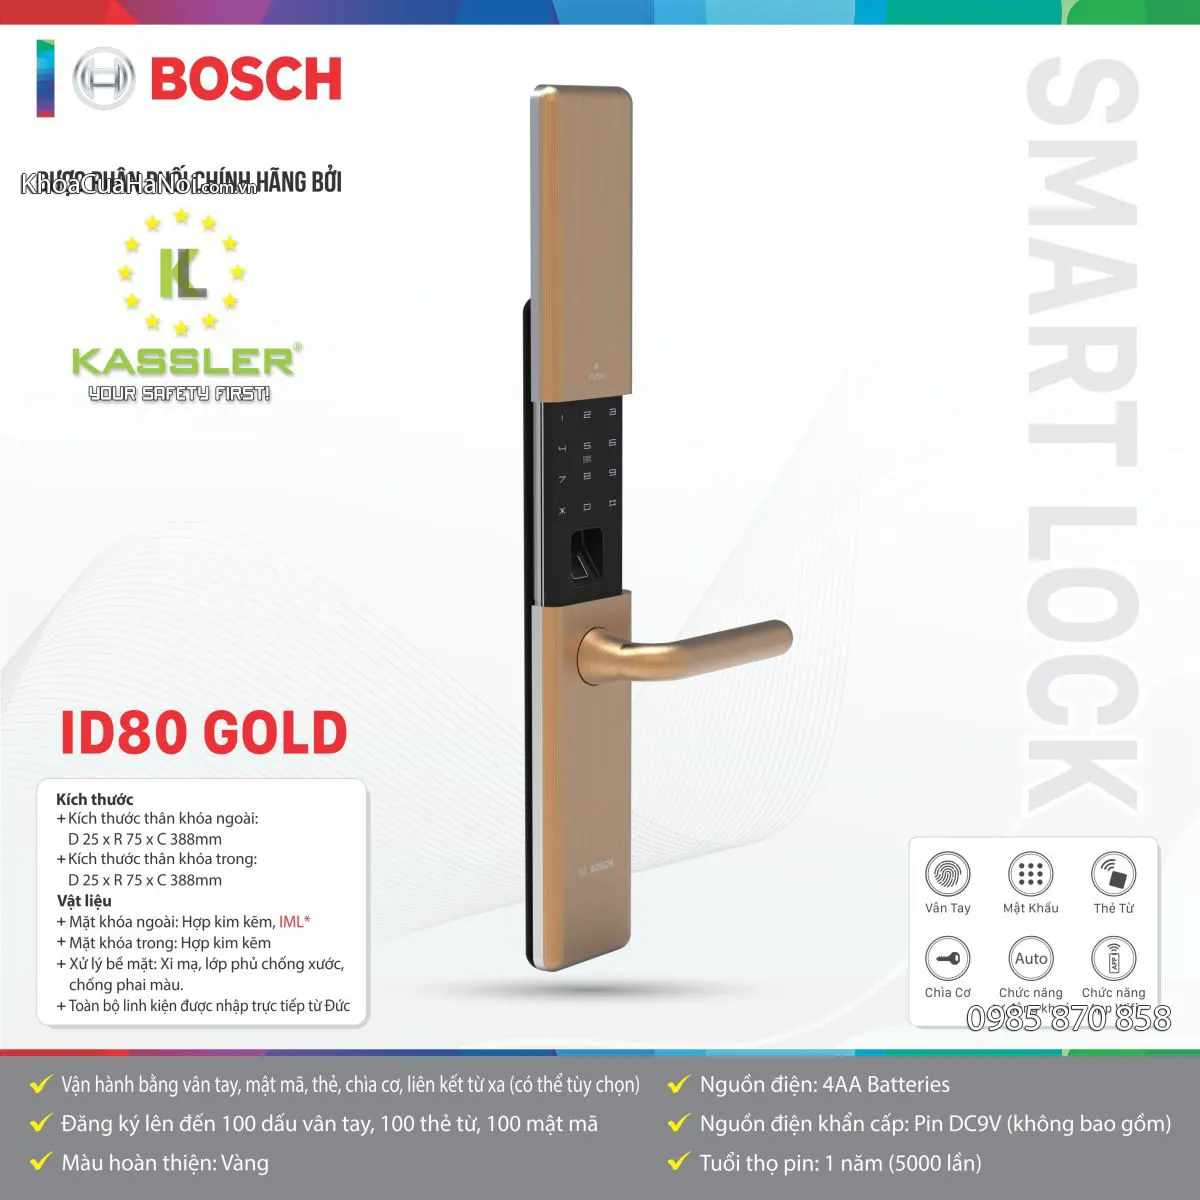 Khóa vân tay ID80 của Bosch